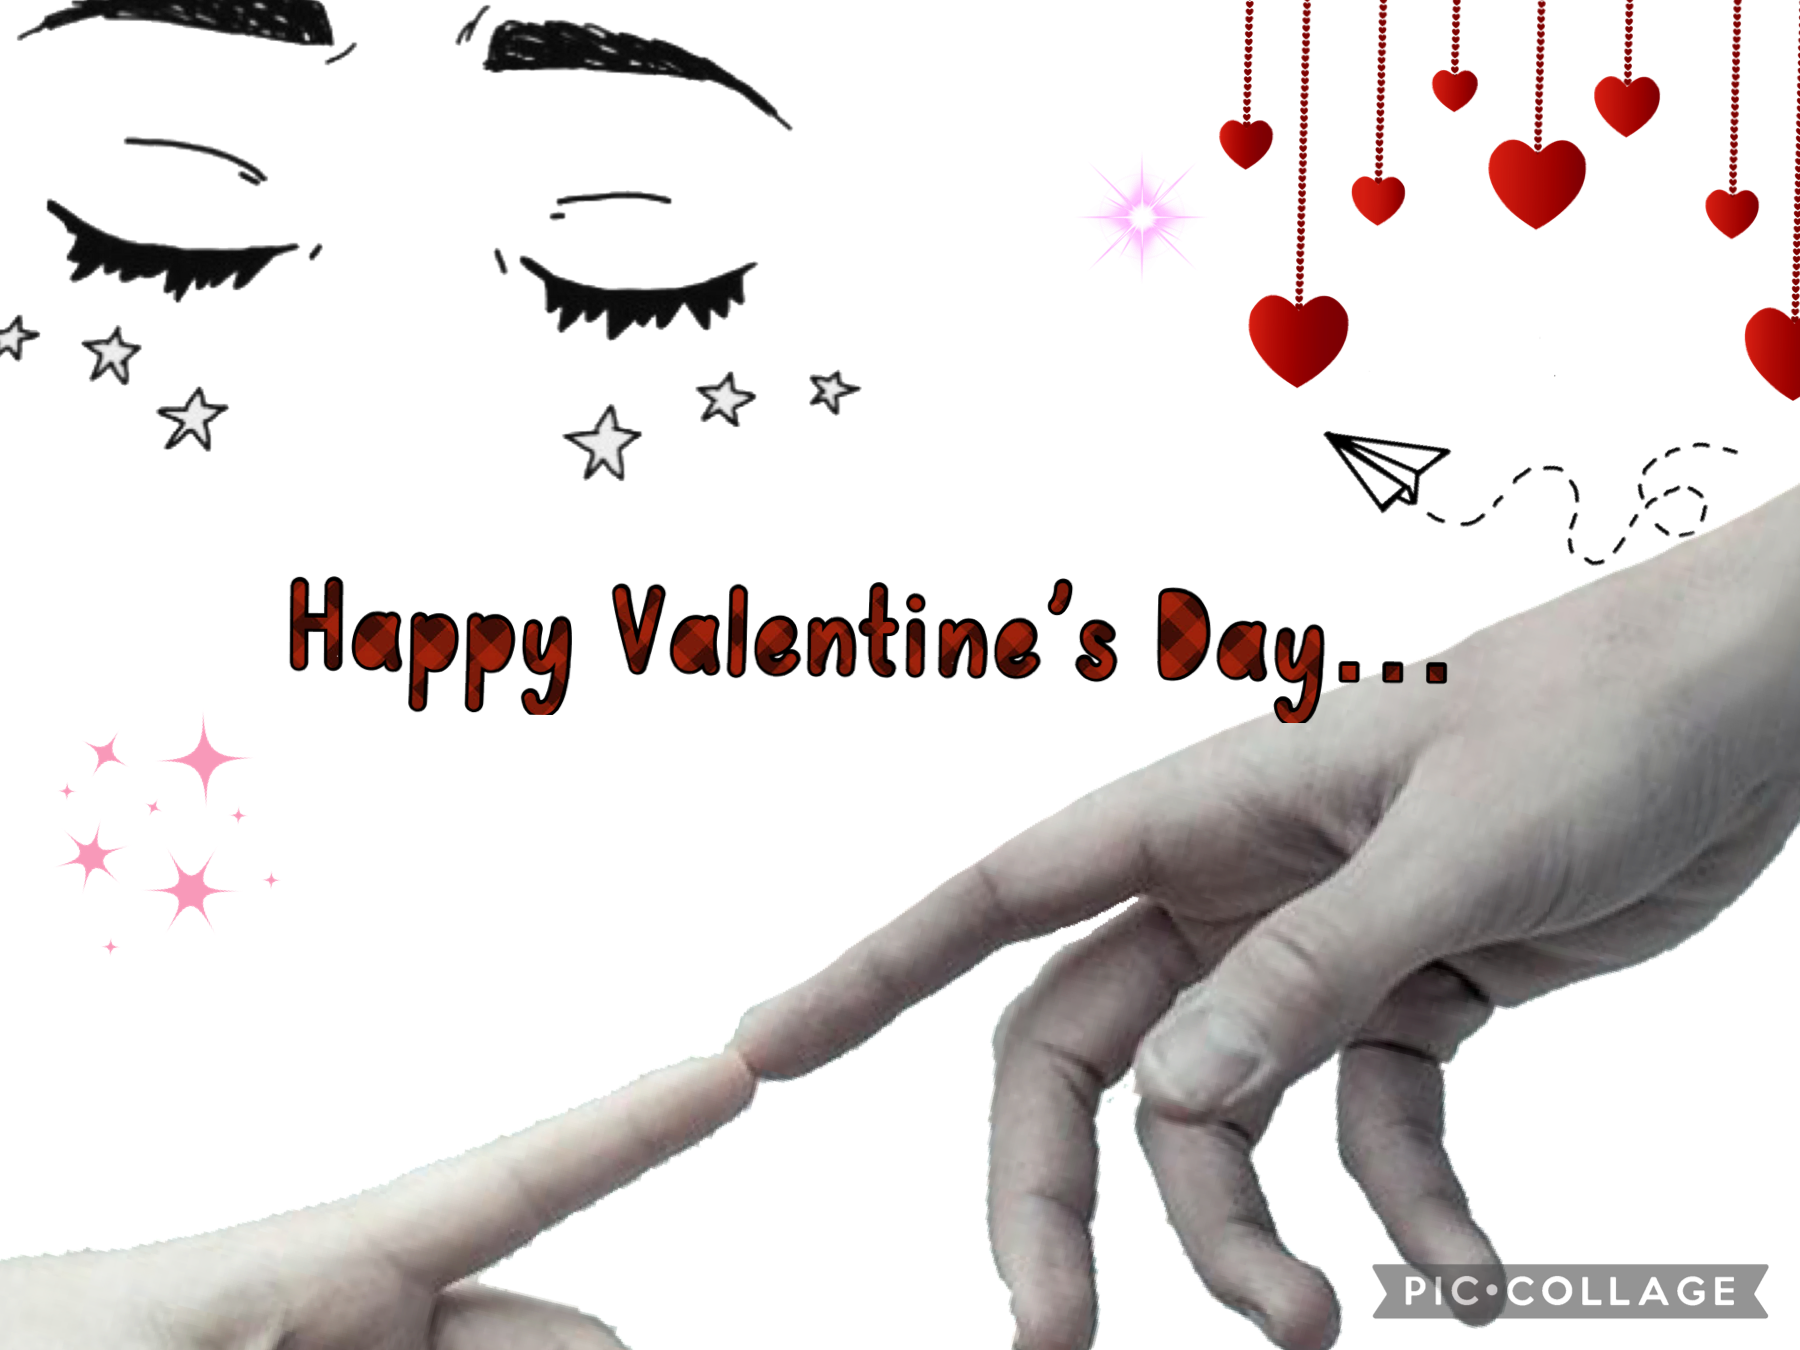 Happy Valentine’s Day :( 
I absolutely despise Valentine’s Day XD